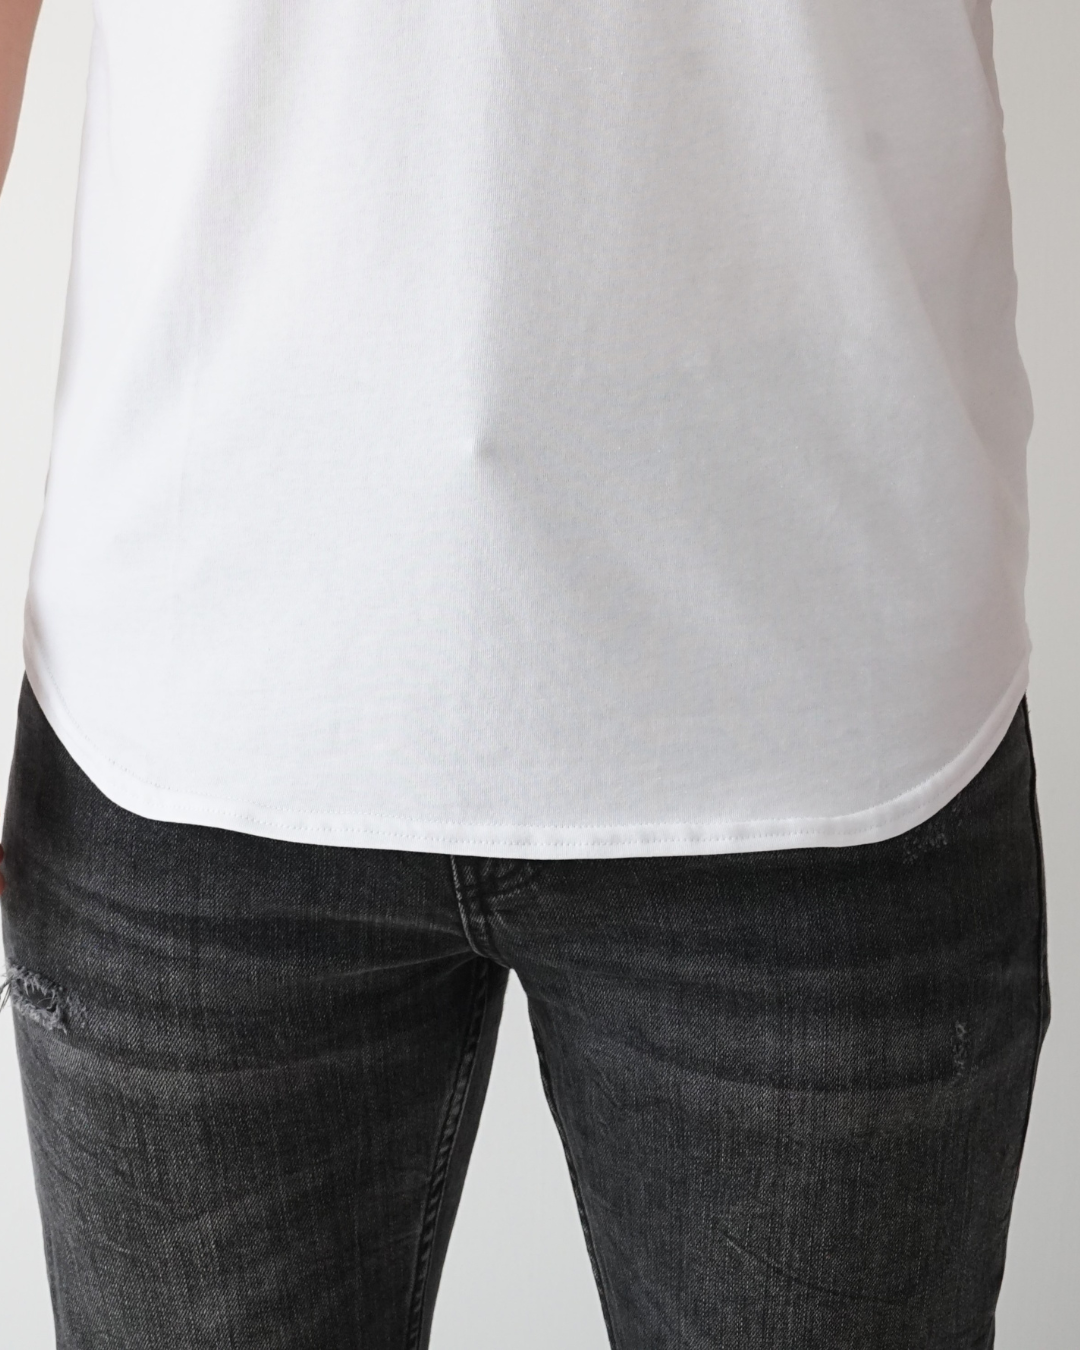 White T-shirt - Short Sleeve Henley Neck Original Bottom